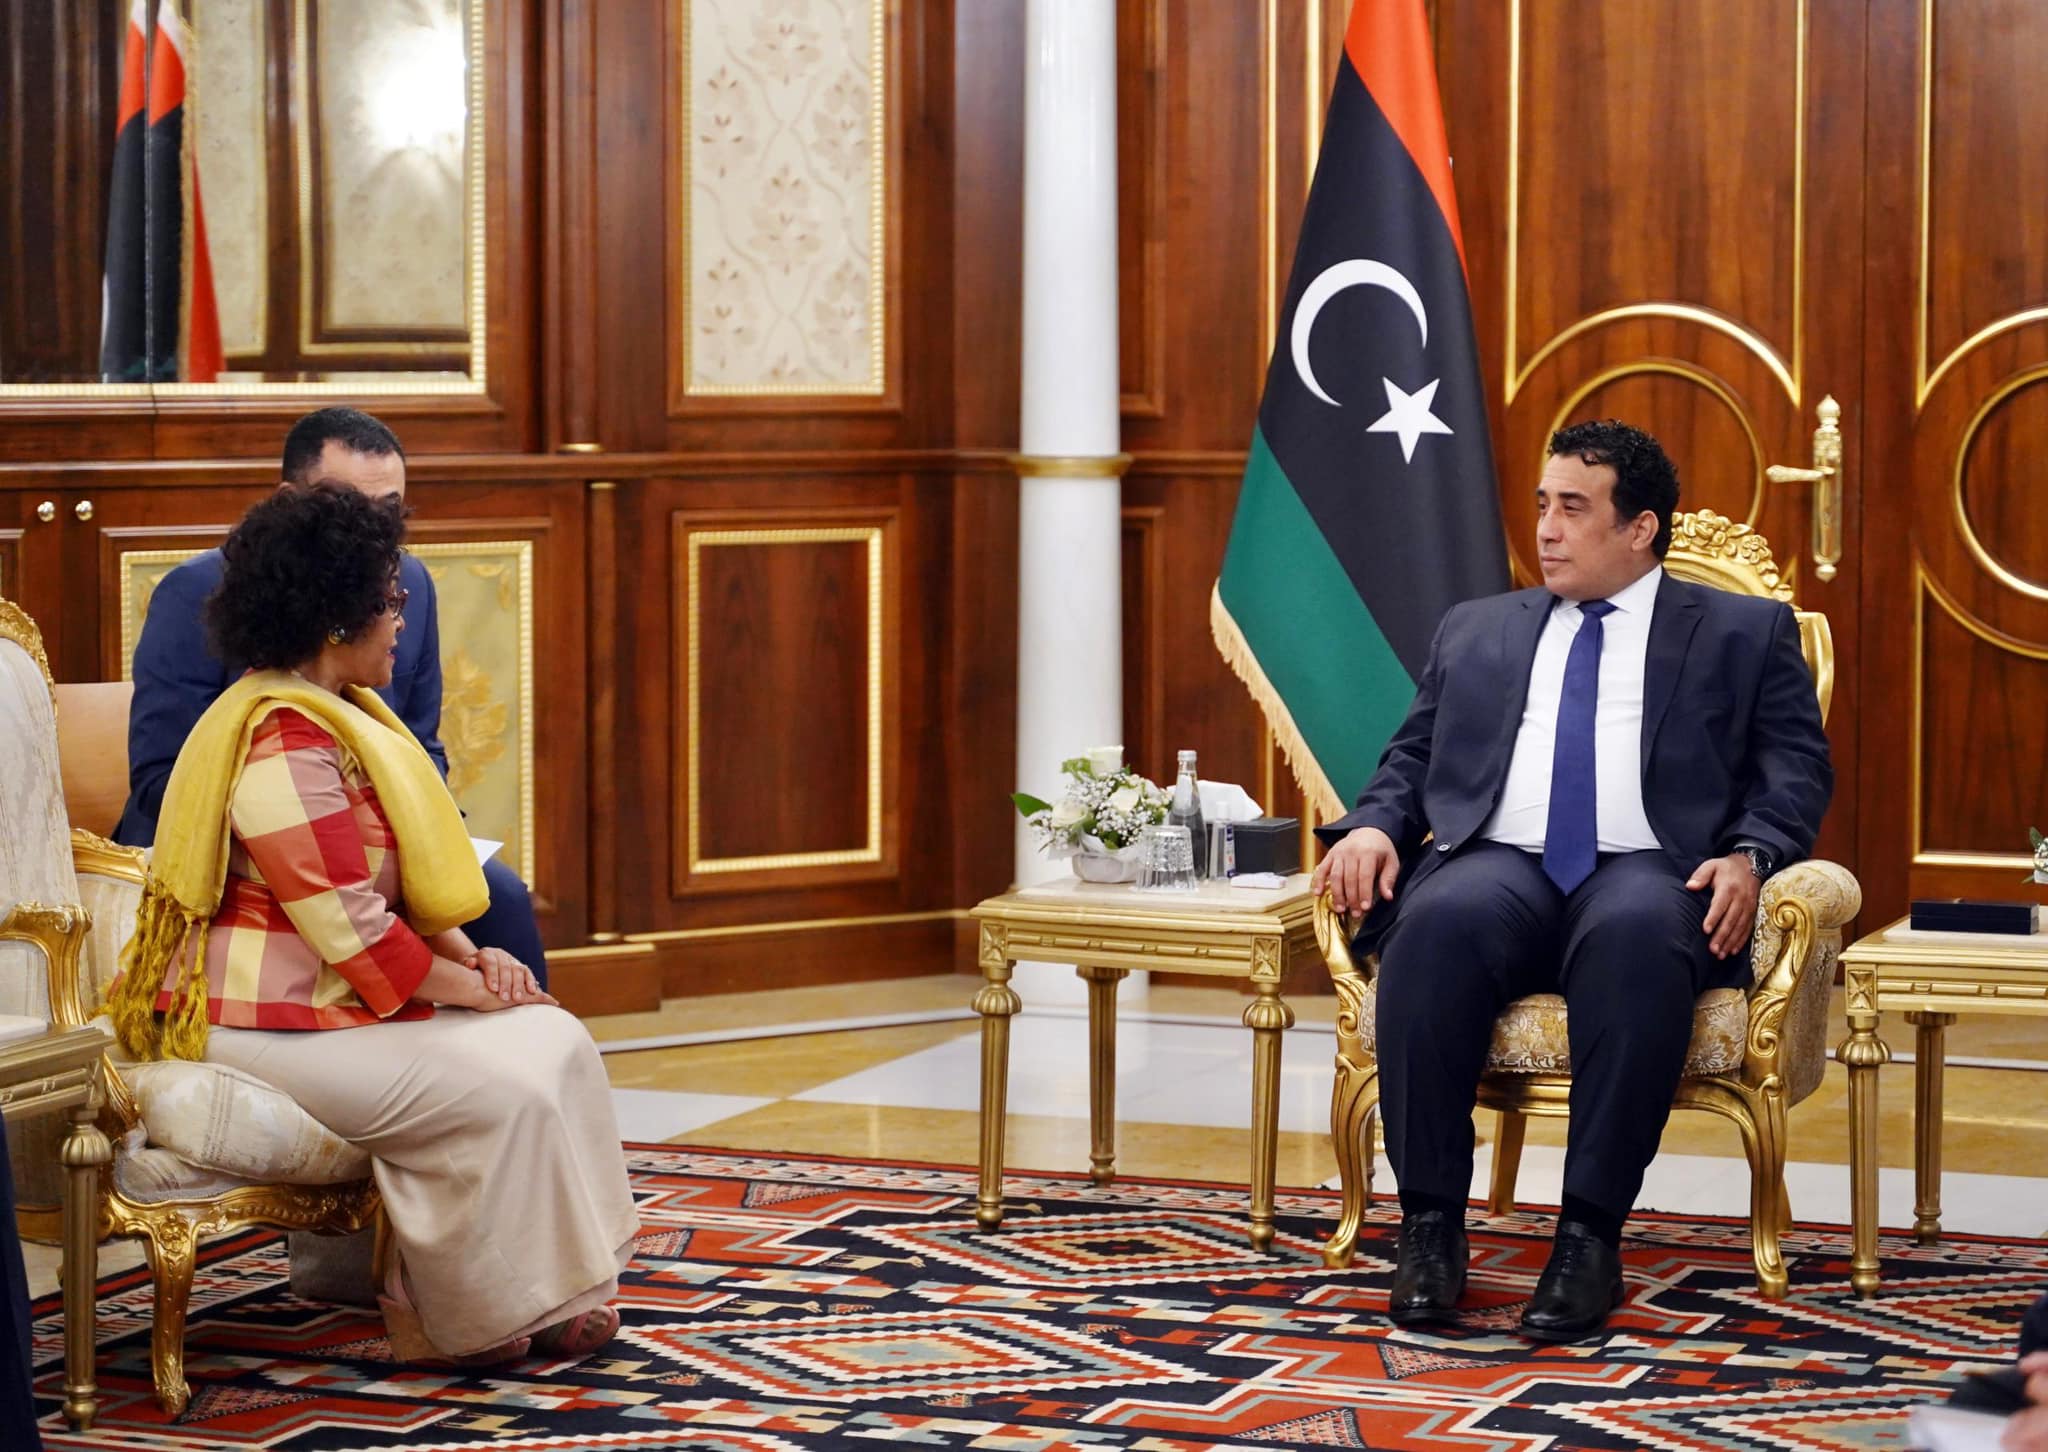 المنفي: ليبيا ملتزمة بالعمل على نمو أفريقيا اقتصادي وتوازن سياساتها